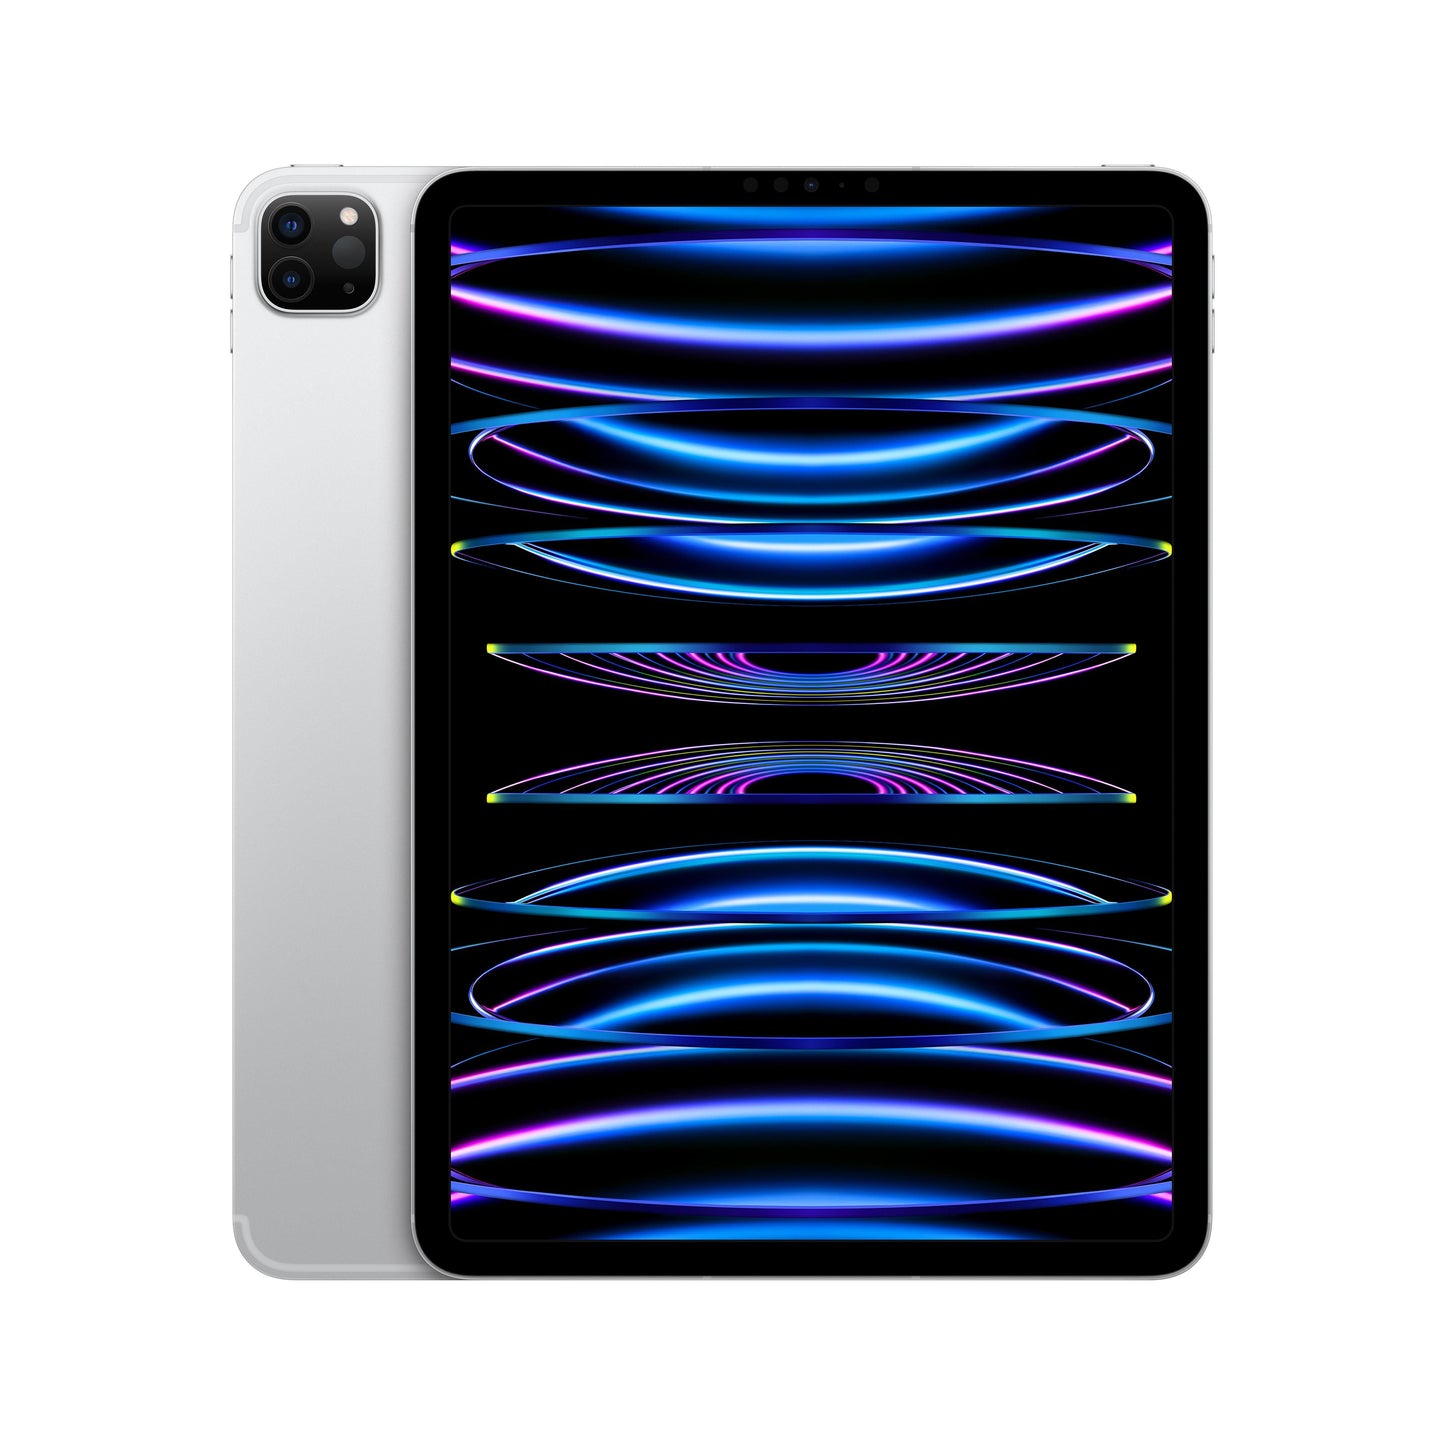 2022 11-inch iPad Pro Wi-Fi + Cellular 128GB - Silver (4th generation)